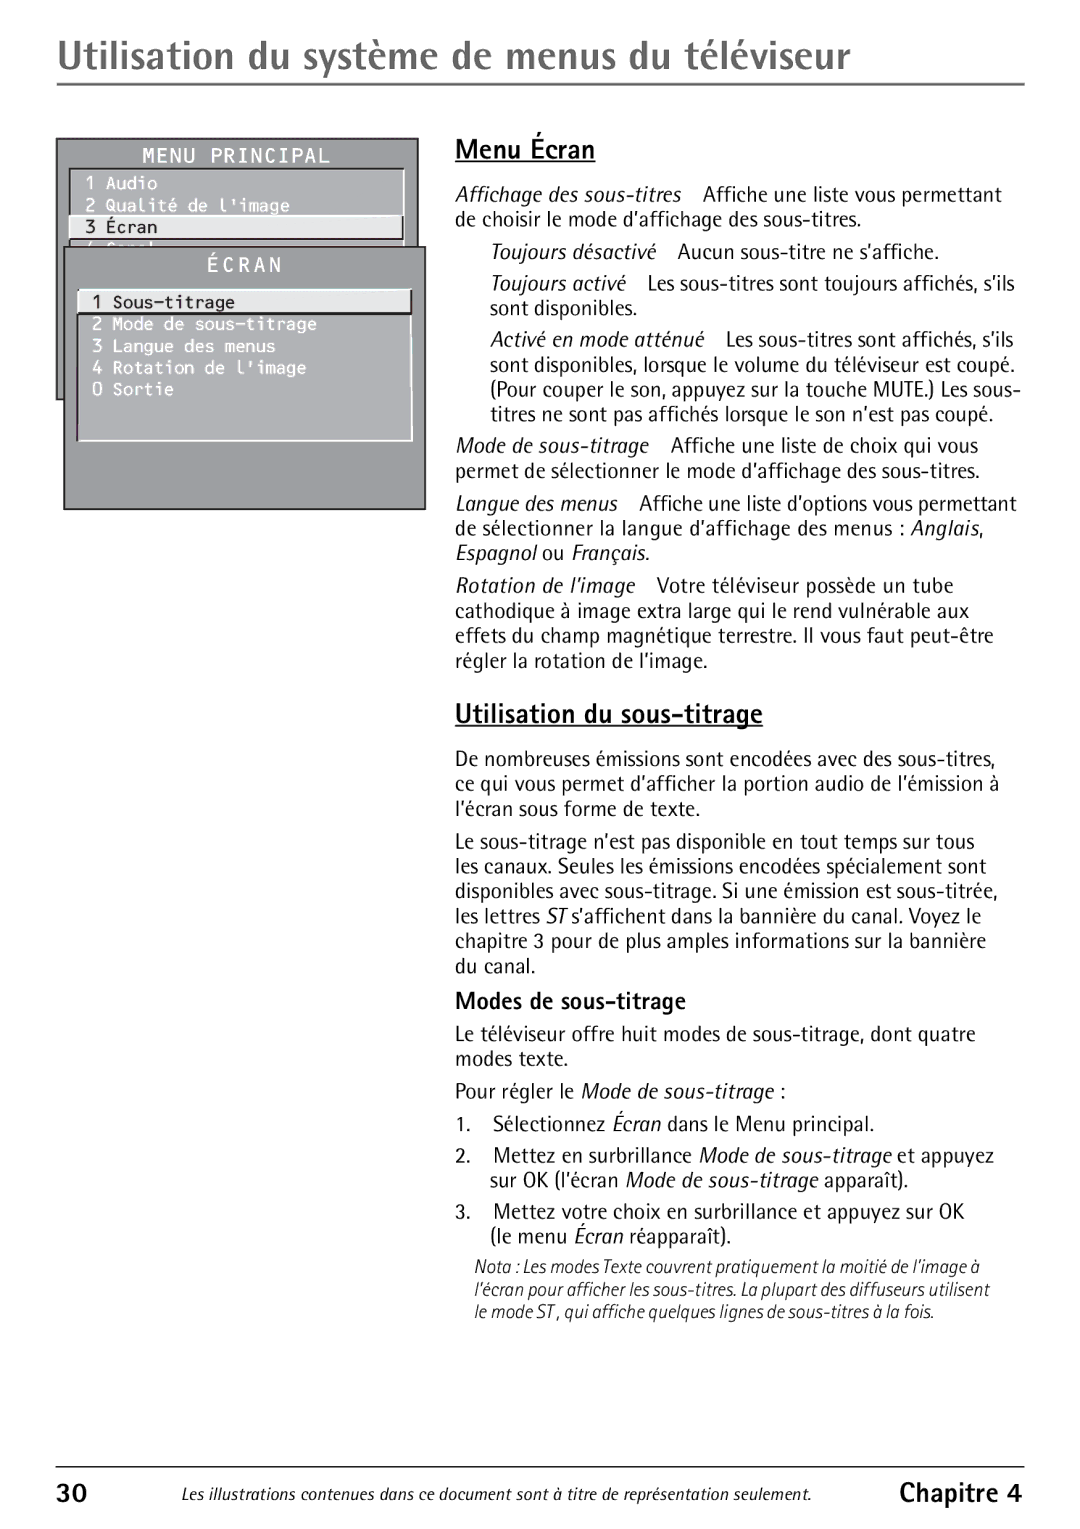 RCA 32F530T Utilisation du système de menus du téléviseur, Menu Écran, Utilisation du sous-titrage, Modes de sous-titrage 